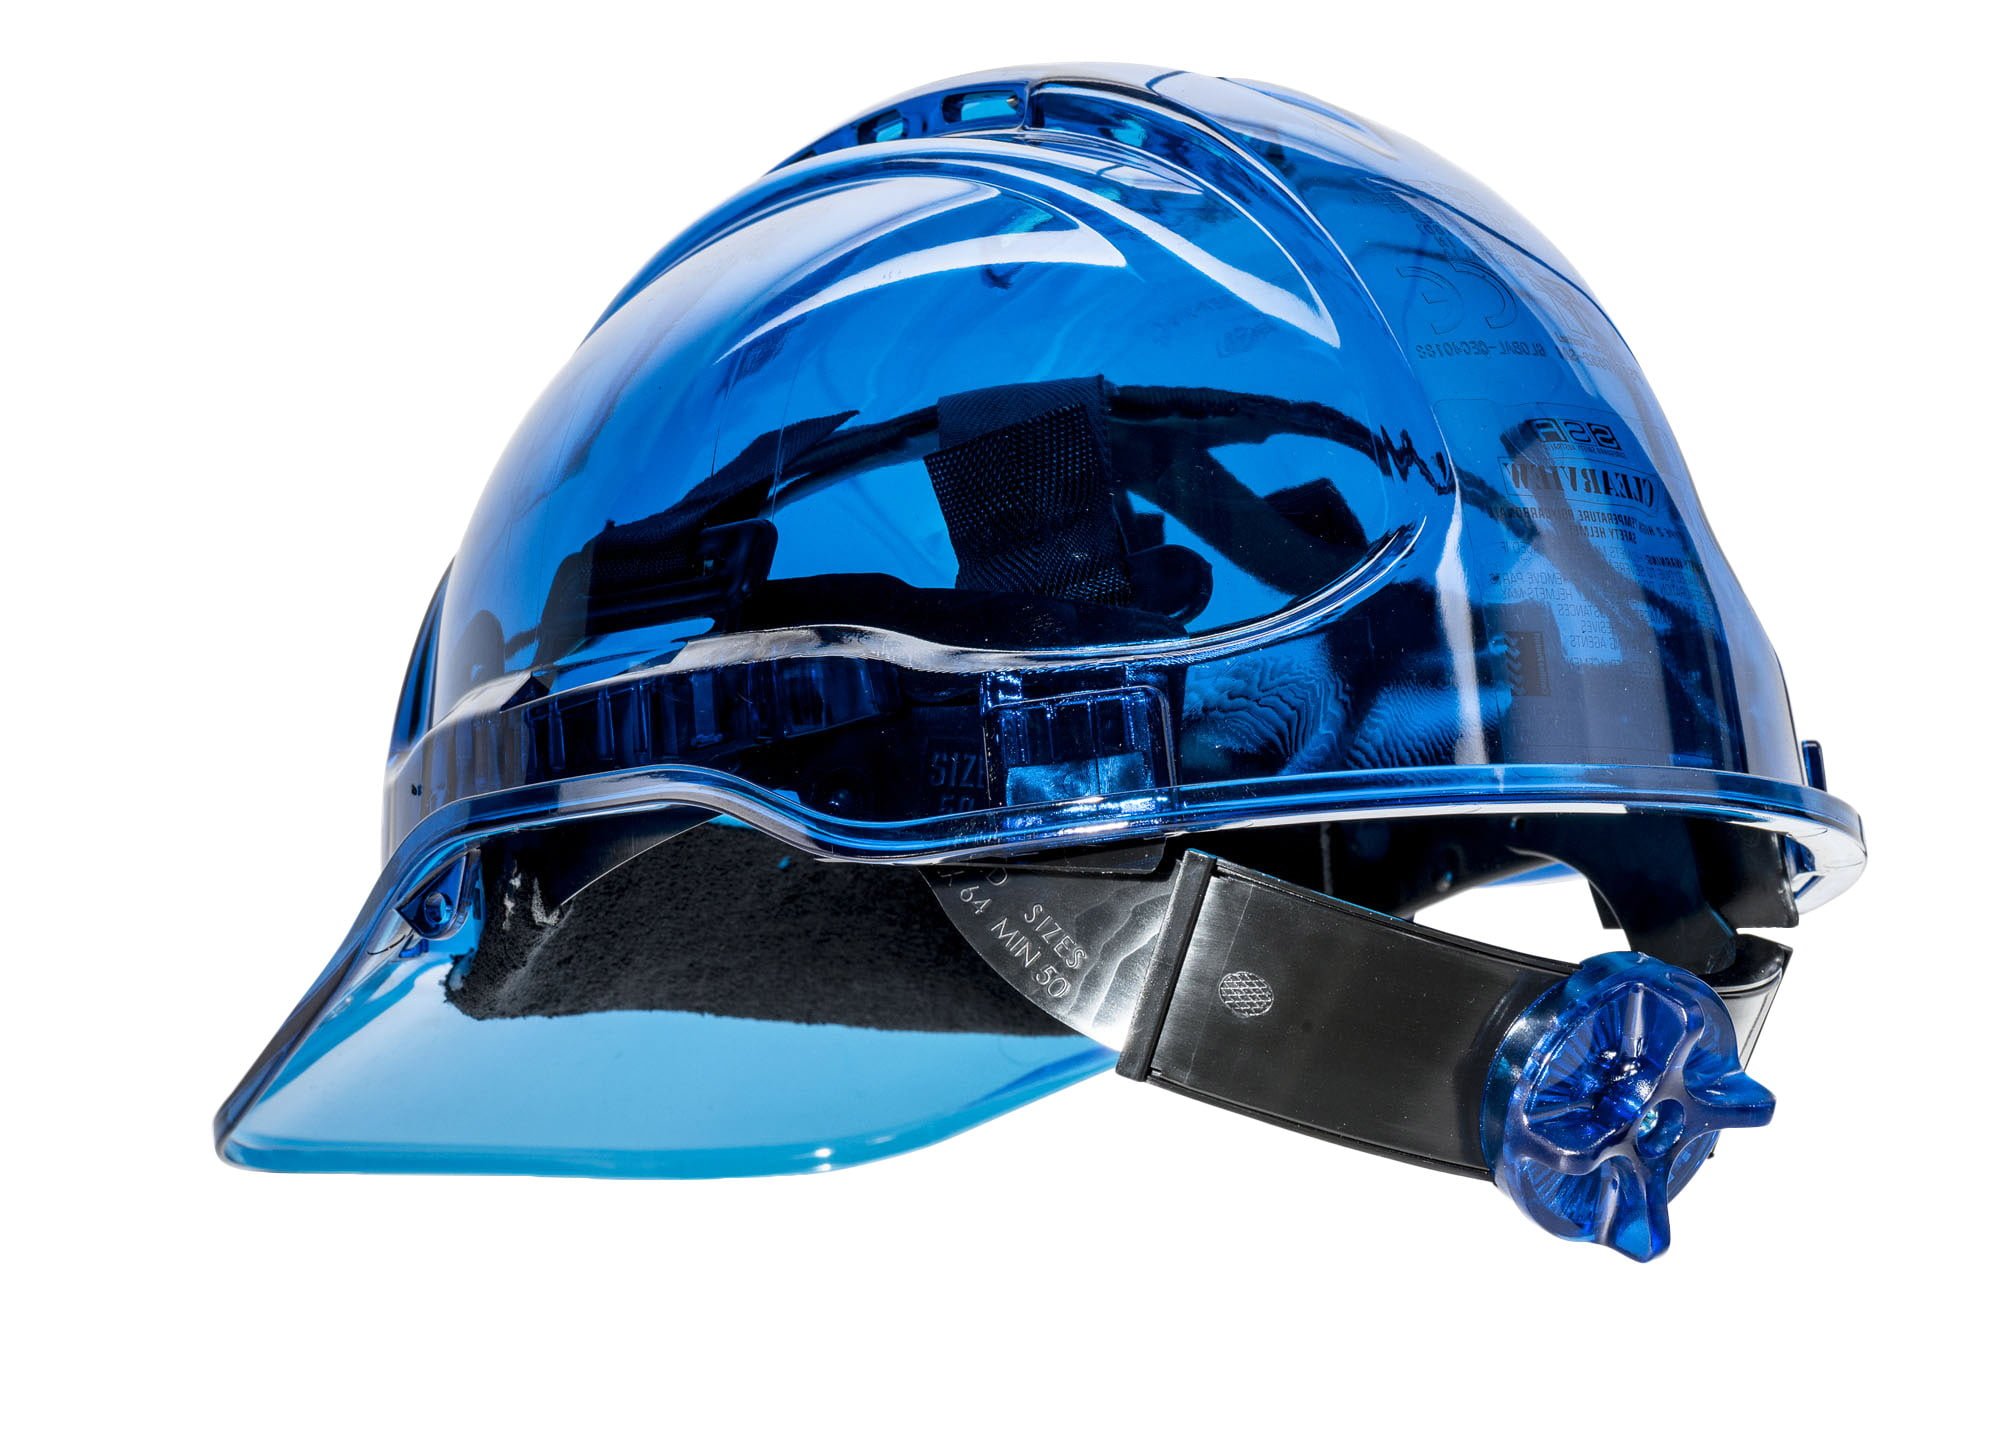 Portwest PV50 Peak View Protective Vented Hard Hat in Translucent Hi Vis ANSI 